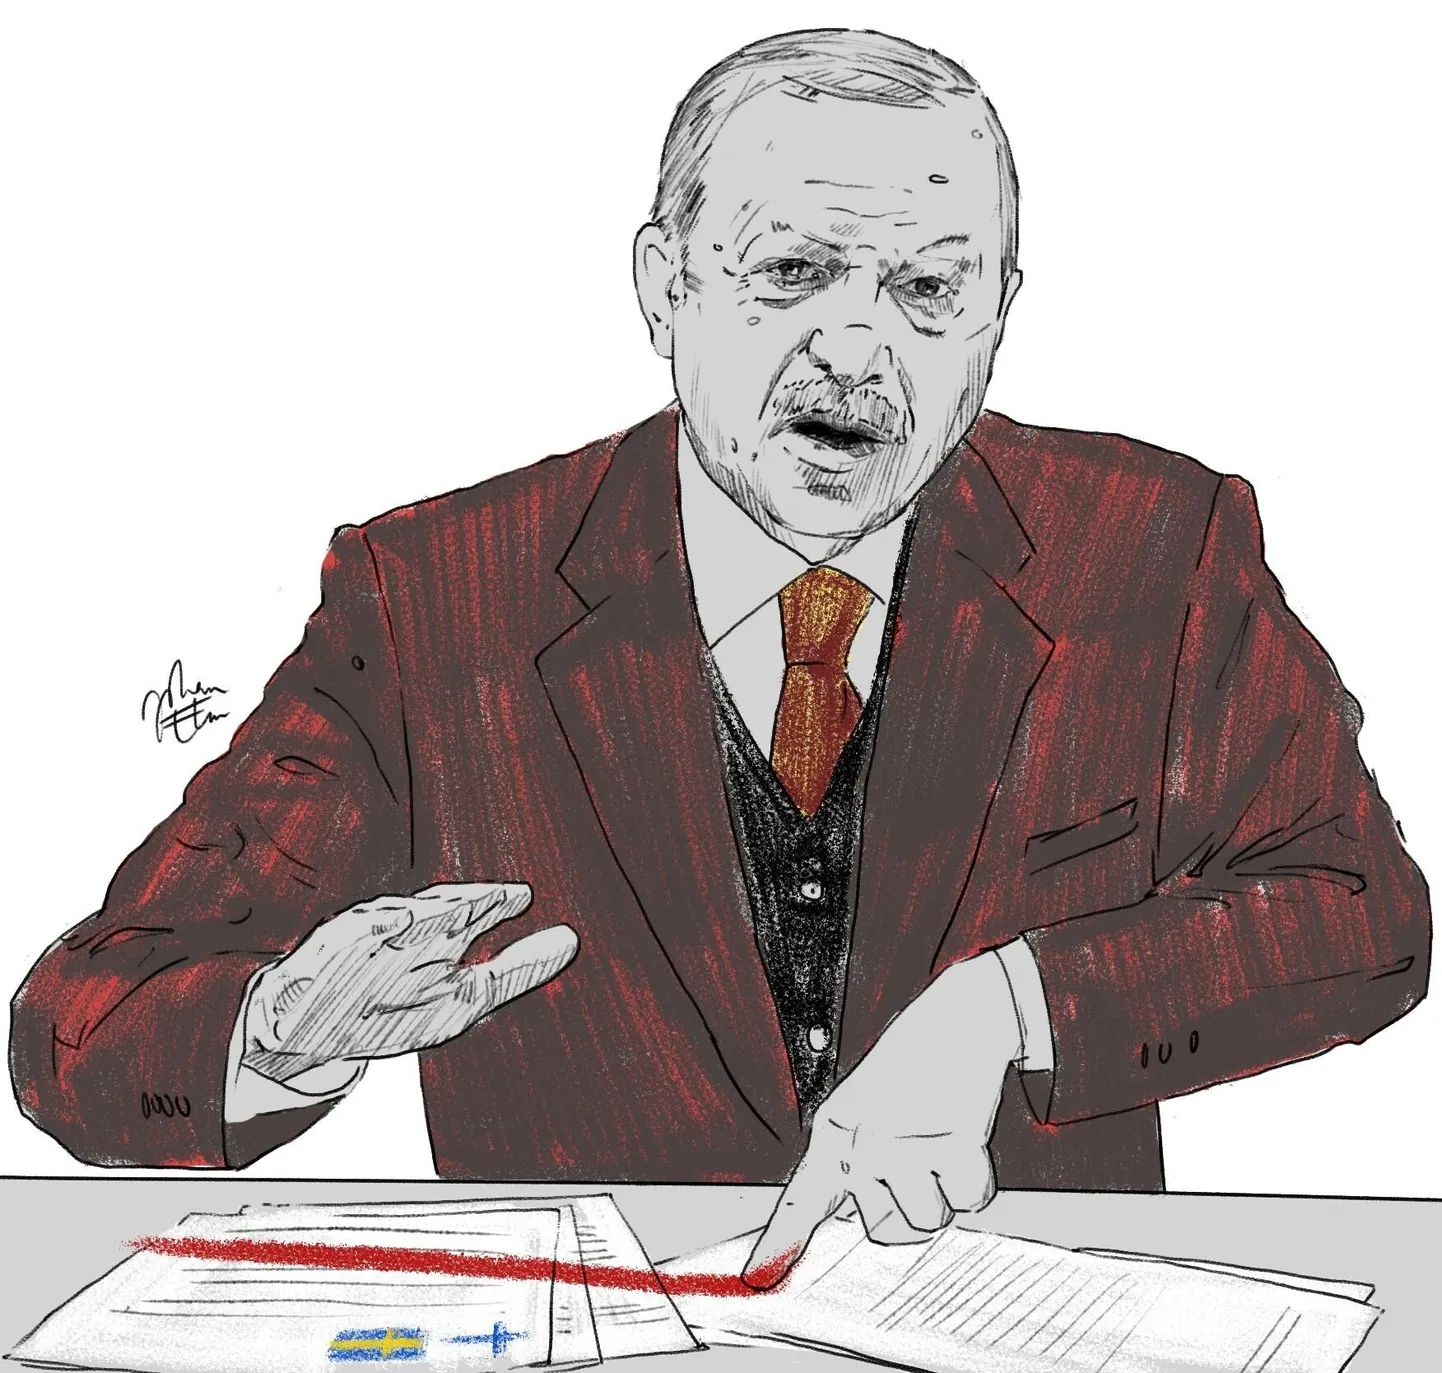 Türgi president Recep Tayyip Erdoǧan